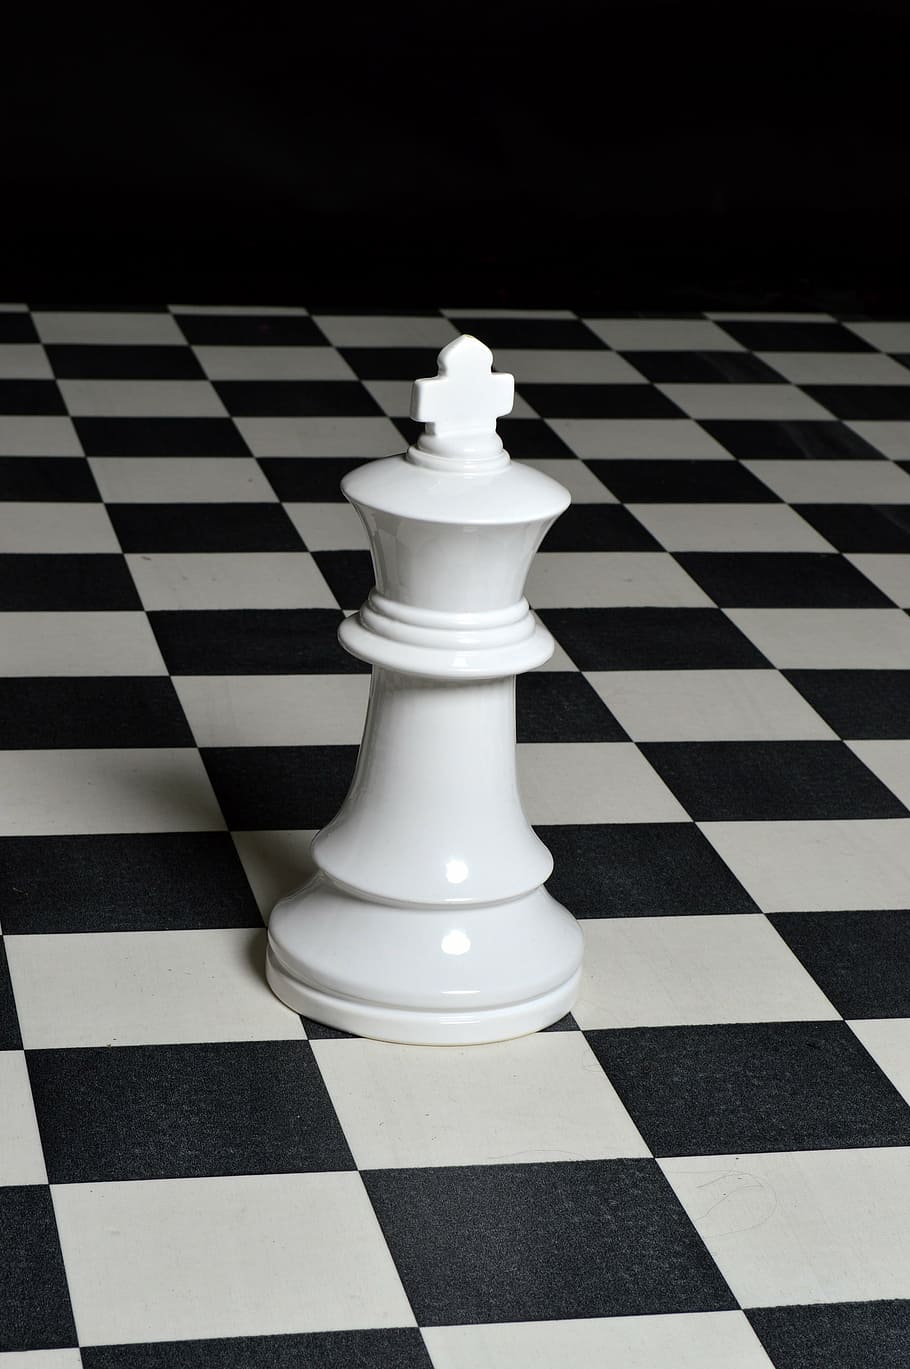 チェスの駒, チェス, 戦略, ボード, 王, ゲーム, ボードゲーム, レジャーゲーム, チェック柄, 白い色